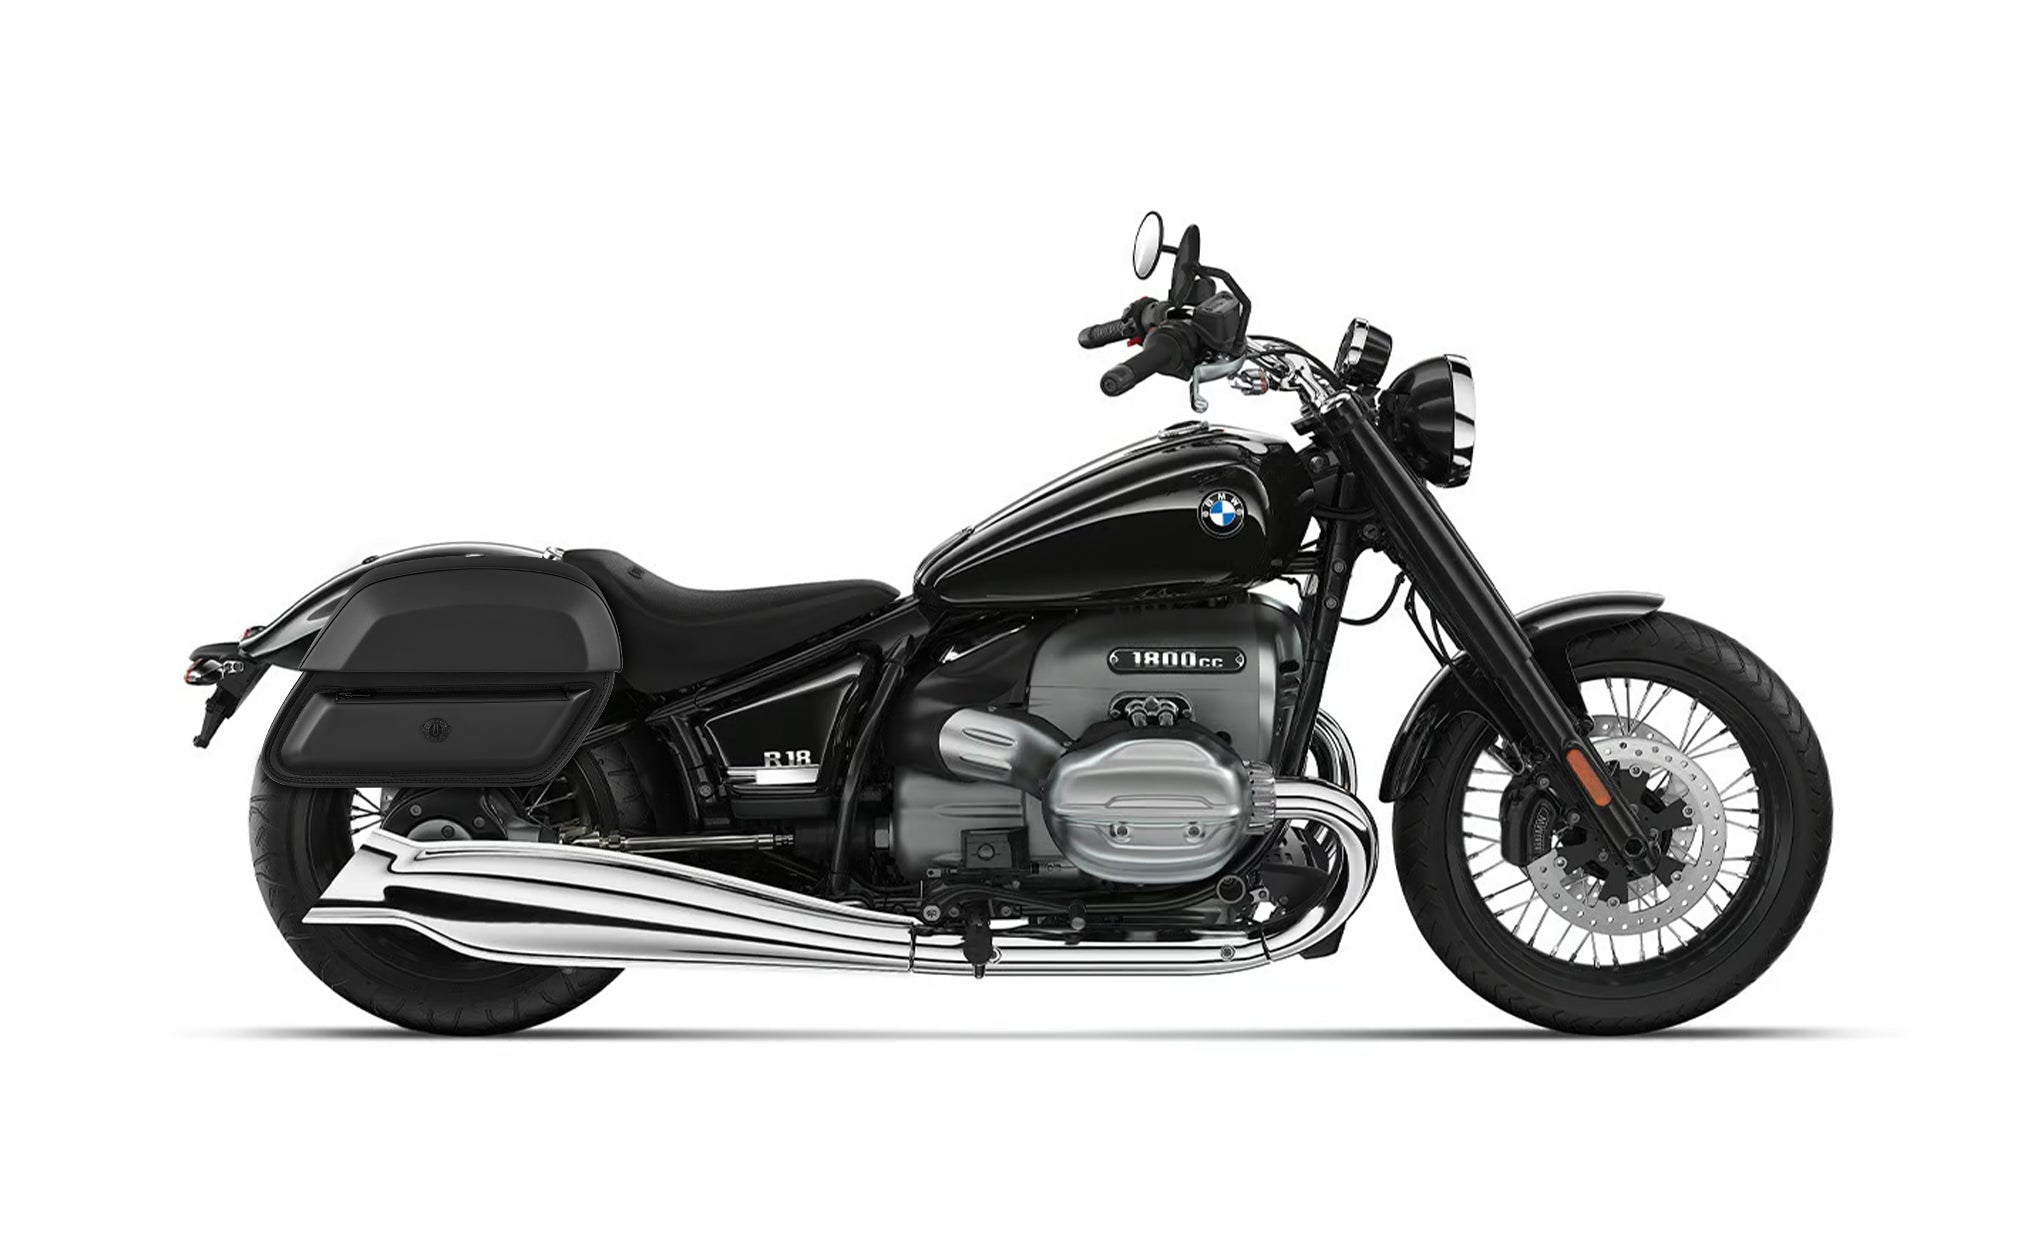 28L - Pantheon Medium Quick-Mount BMW R18 Motorcycle Saddlebags @expand